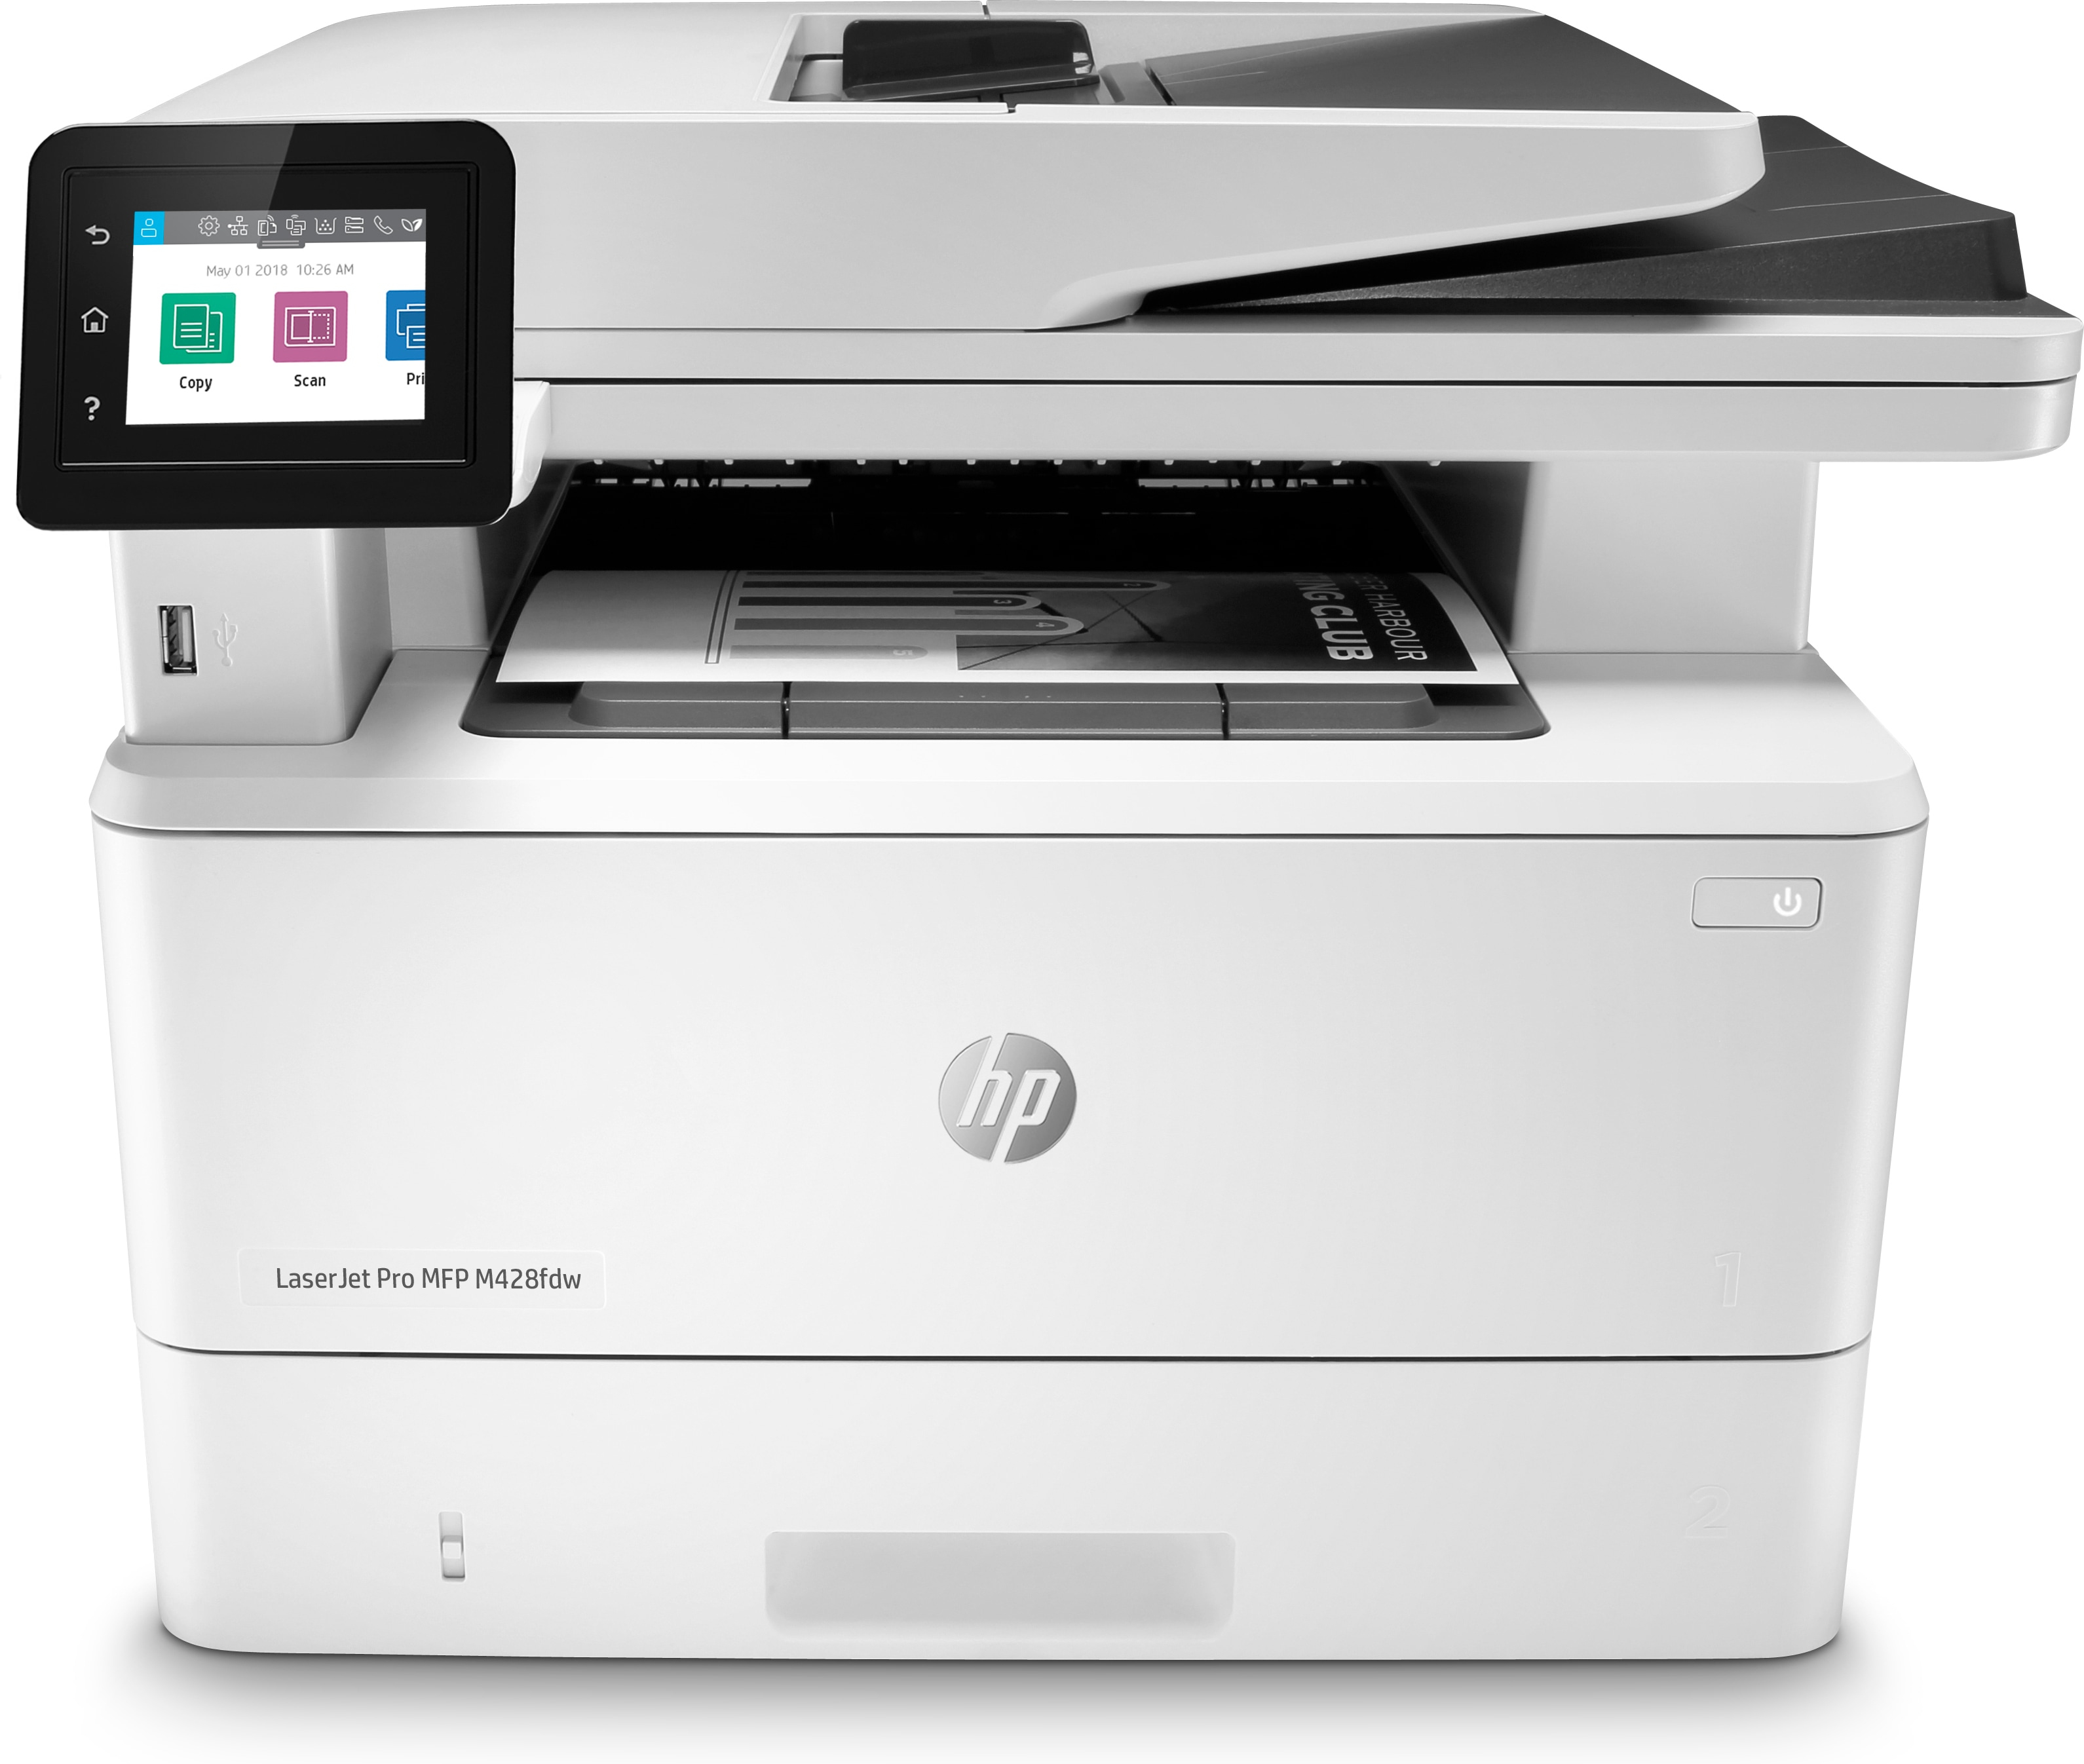 HP HP LaserJet Pro MFP M428fdw, Printen, kopi&#235;ren, scannen, fax, e-mail, Scannen naar e-mail; Dubbelzijdig scannen